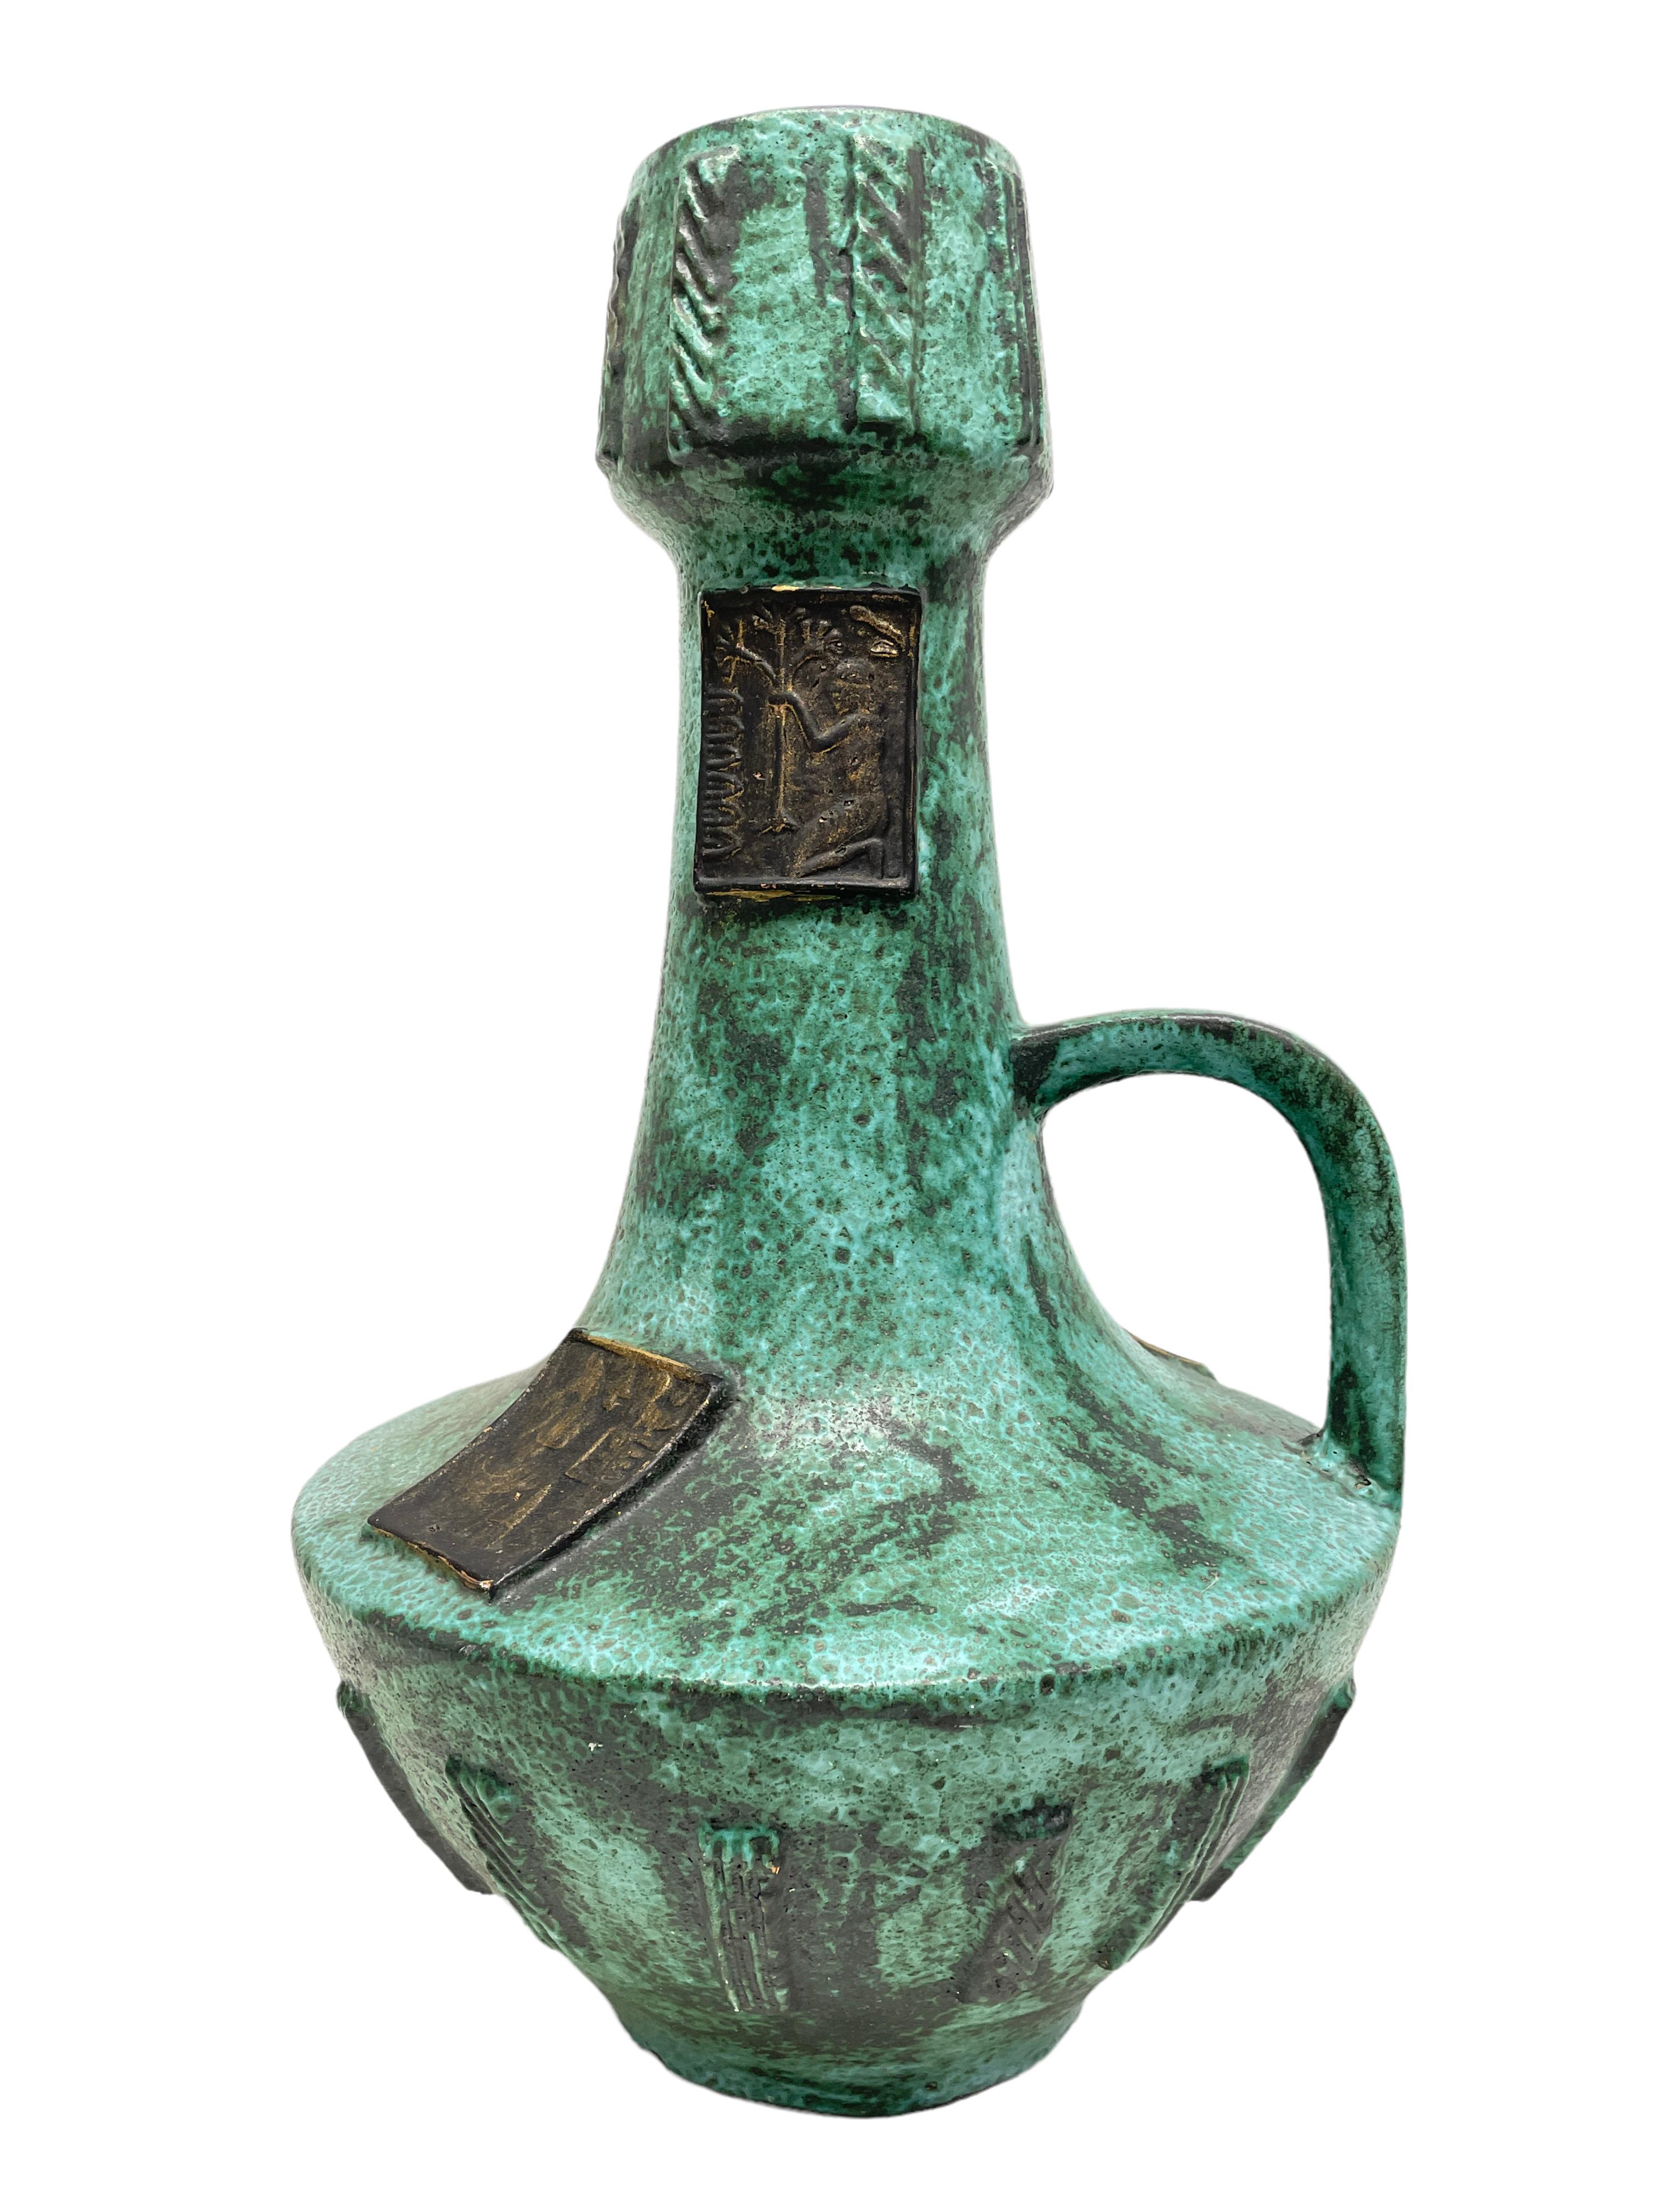 Un étonnant vase de sol en céramique de style moderne du milieu du siècle, fabriqué en Allemagne, vers les années 1970. C'est un vase de sol lourd. Le vase est en très bon état, sans éclats, ni fissures, ni morsures de puces. Belle couleur et motif